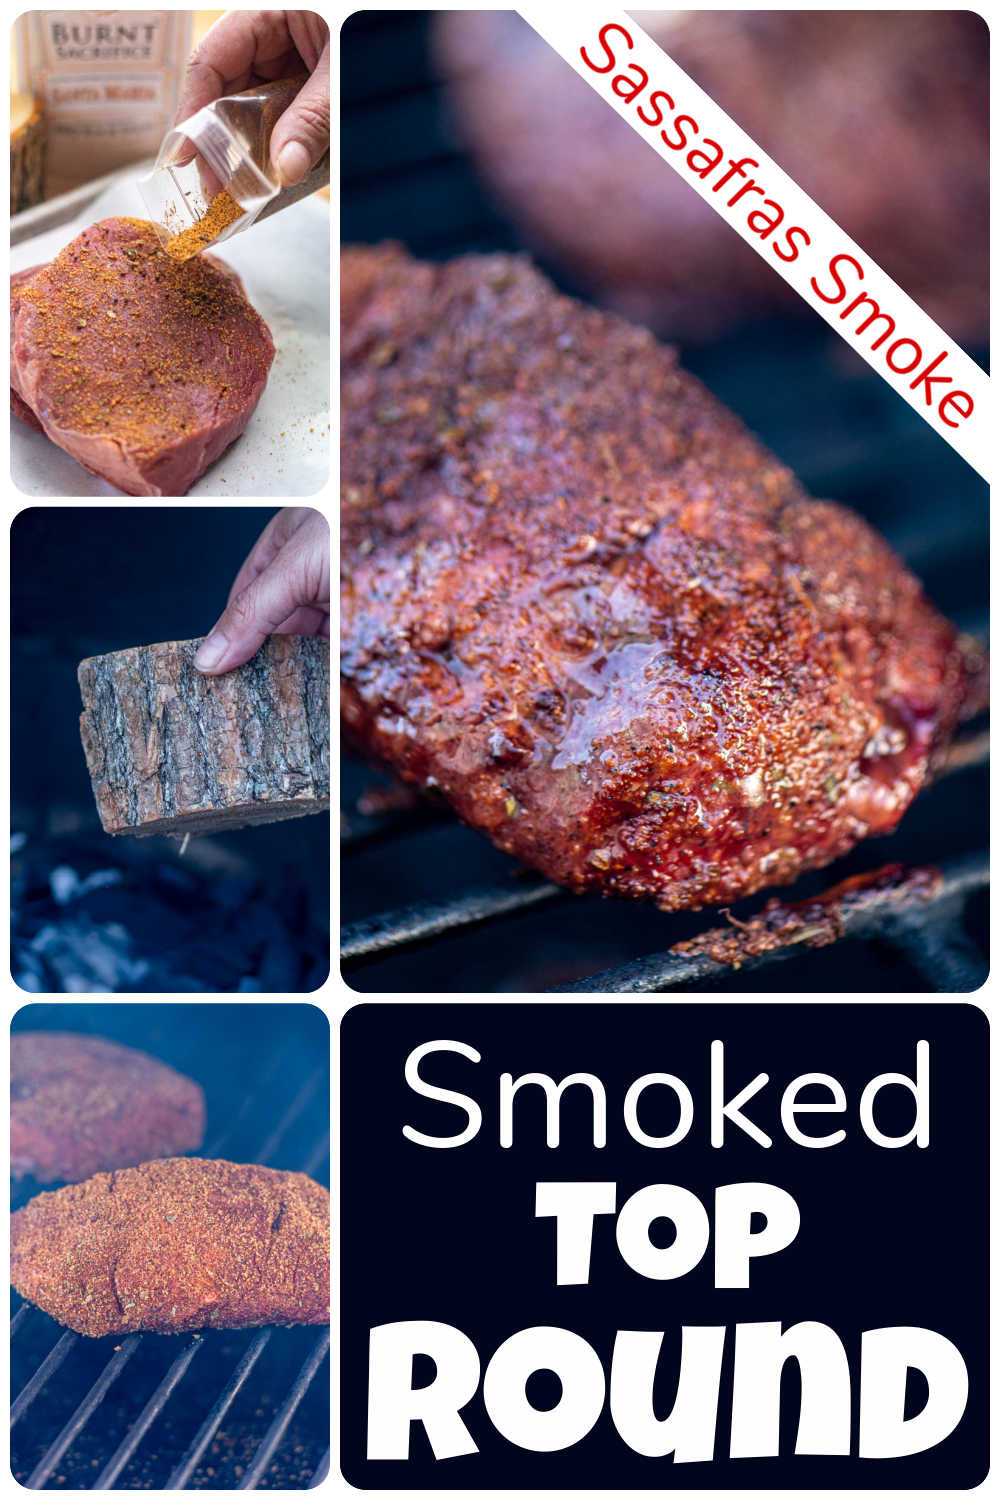 Smoked Top Round Roast - London Broil